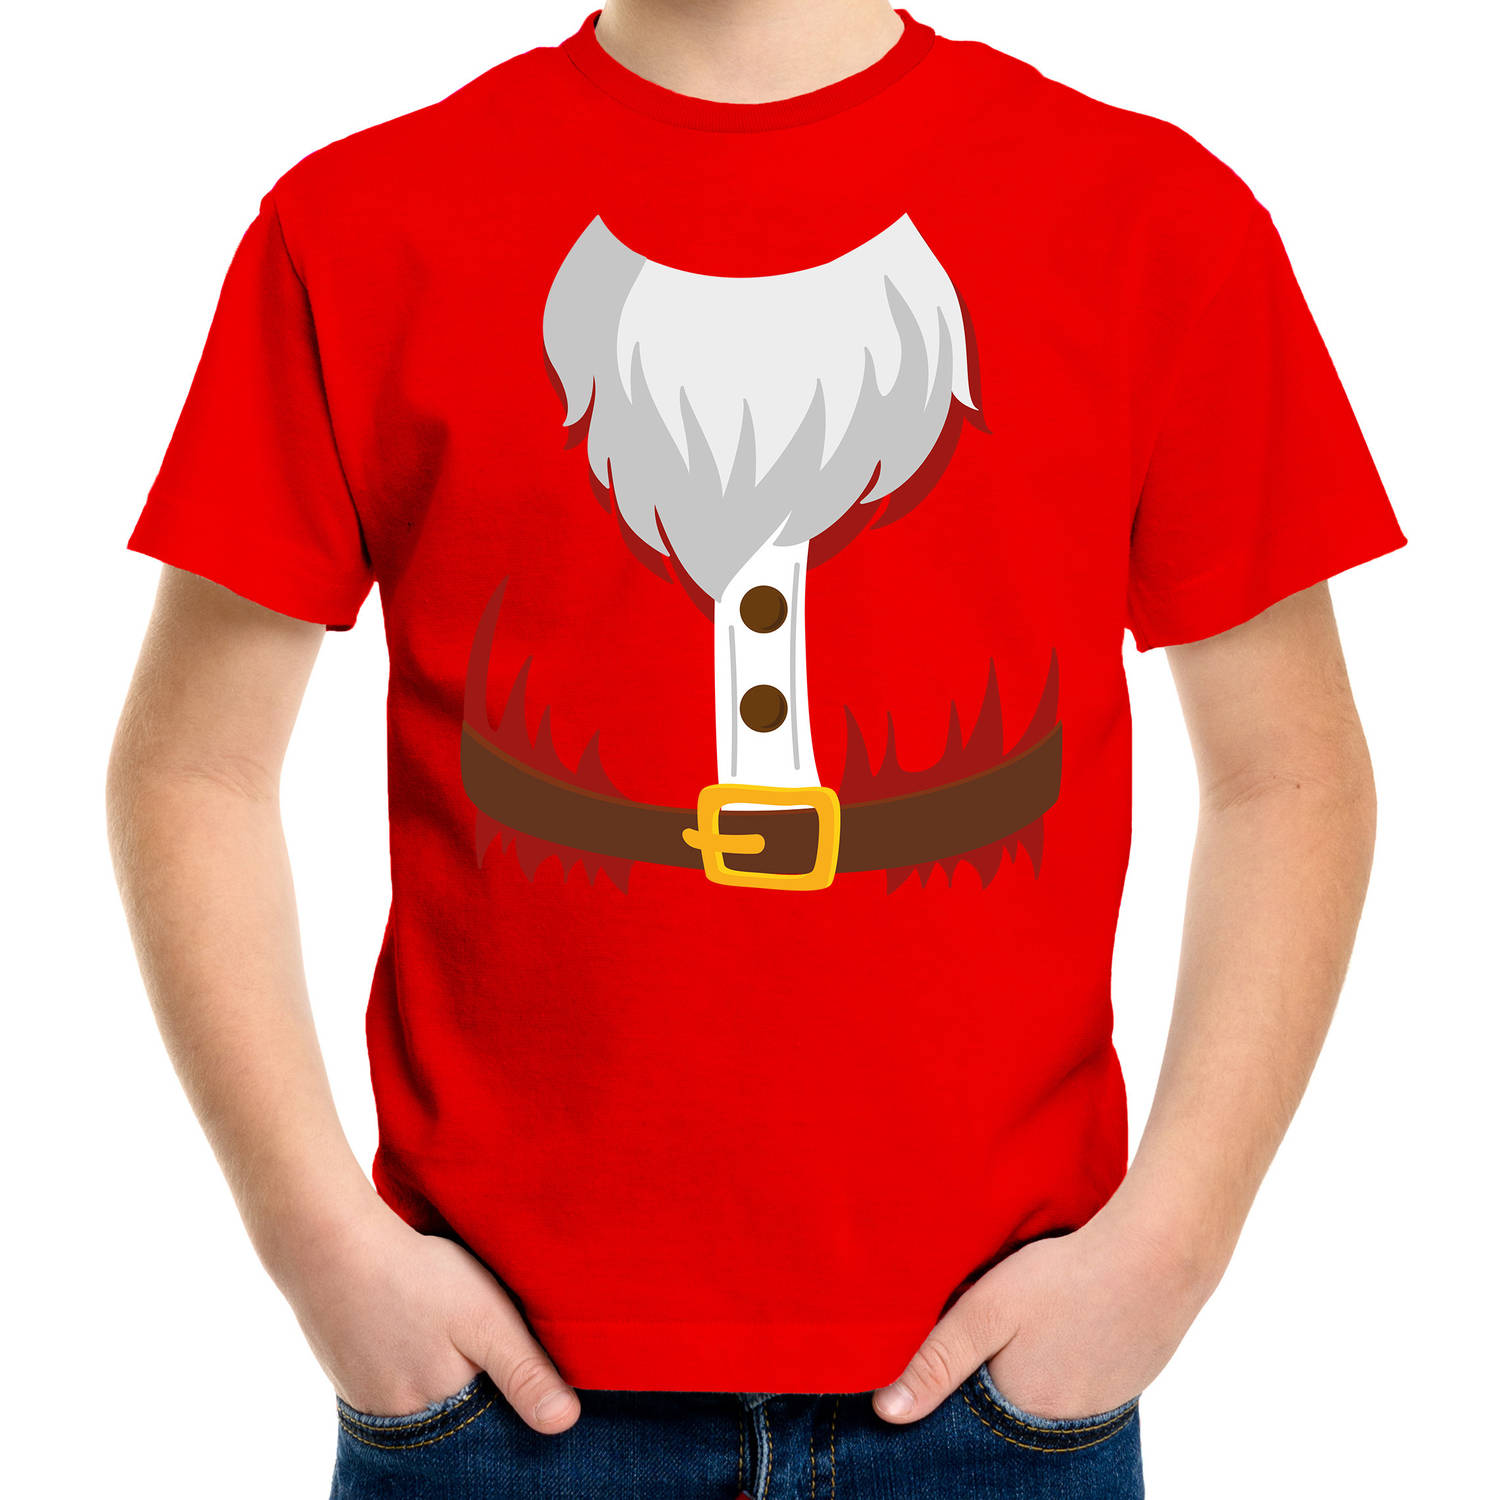 Kerstman kostuum verkleed t-shirt rood voor kinderen M (116-134) - Kerst kostuums